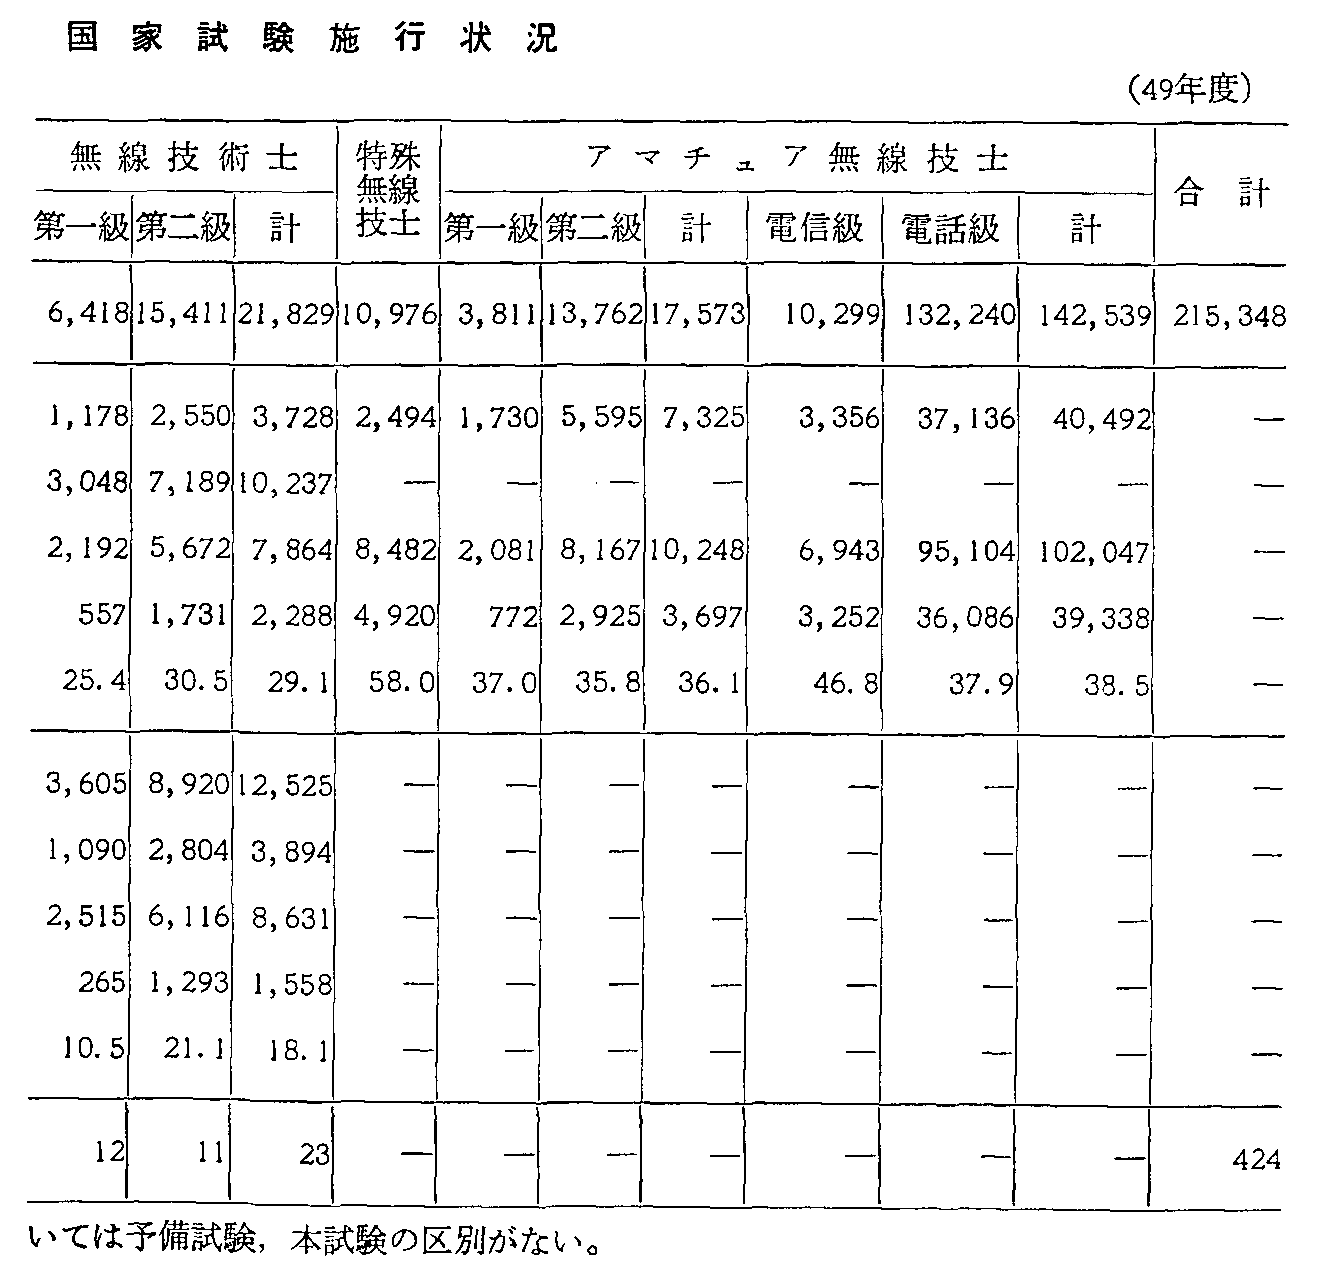 2-6-19\ ]ҍƎi{H(49Nx)(2)